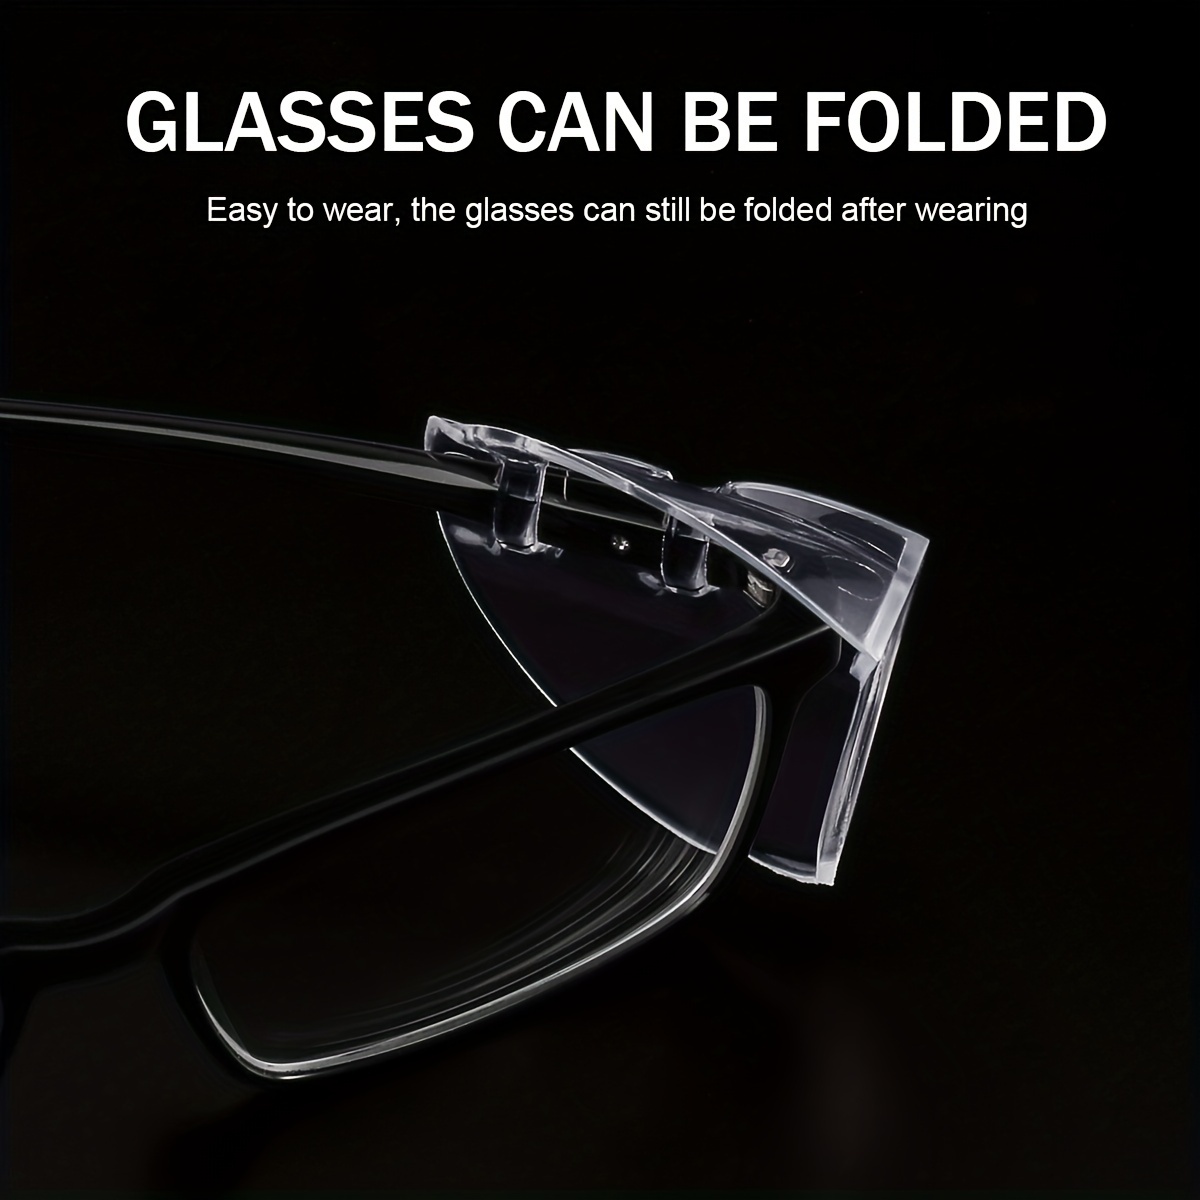 Text - Protección de los ojos en el trabajo: tipos de gafas de seguridad